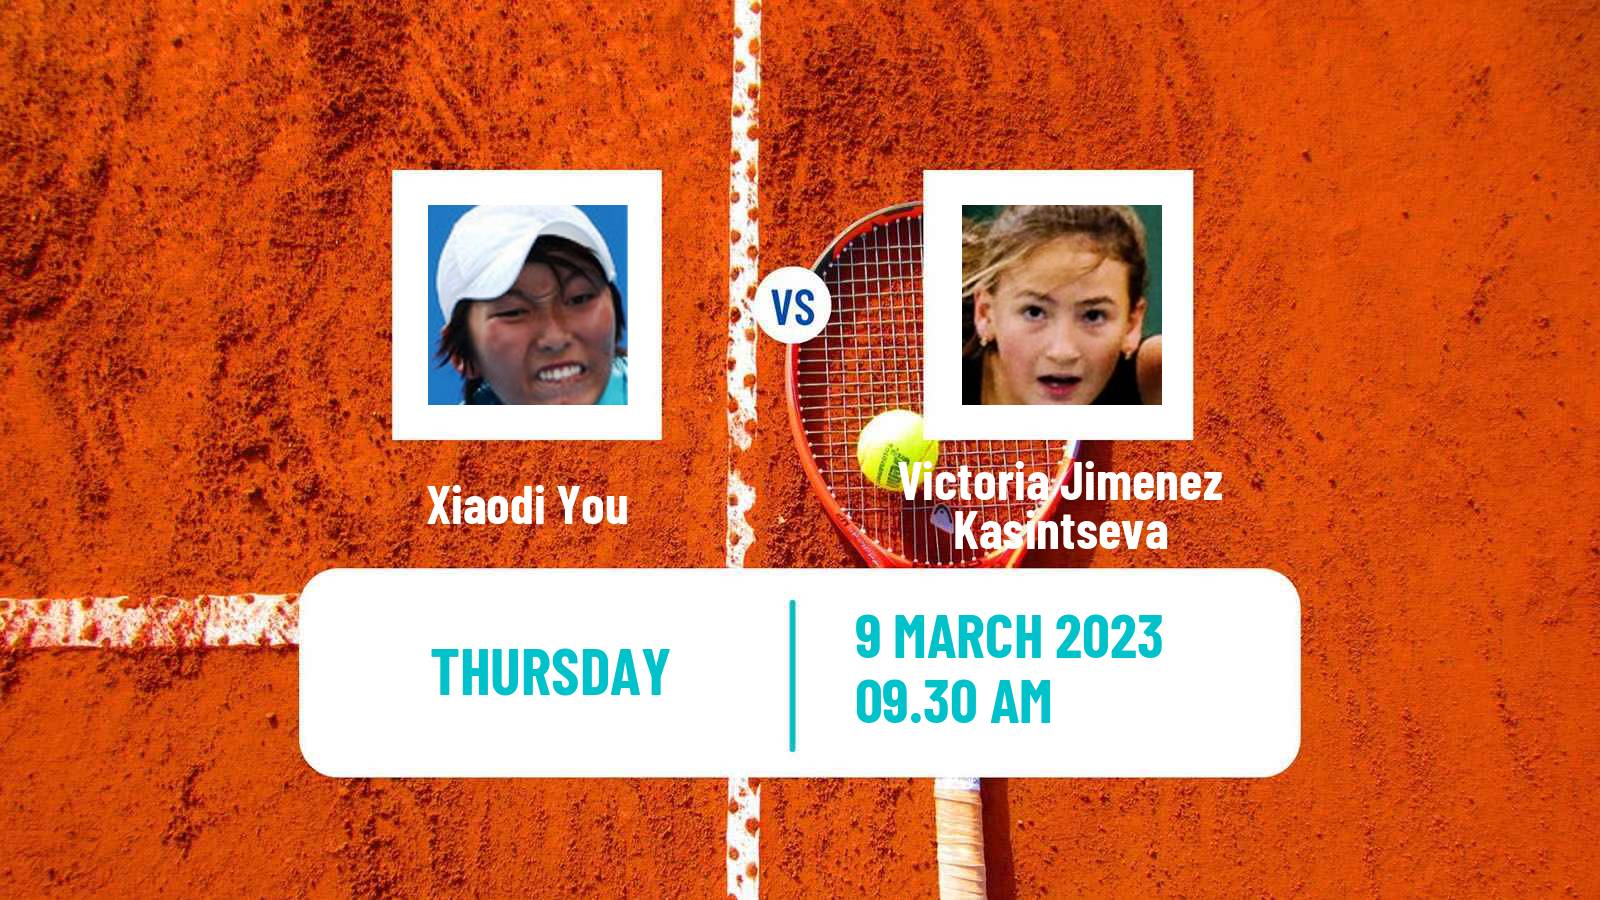 Tennis ITF Tournaments Xiaodi You - Victoria Jimenez Kasintseva